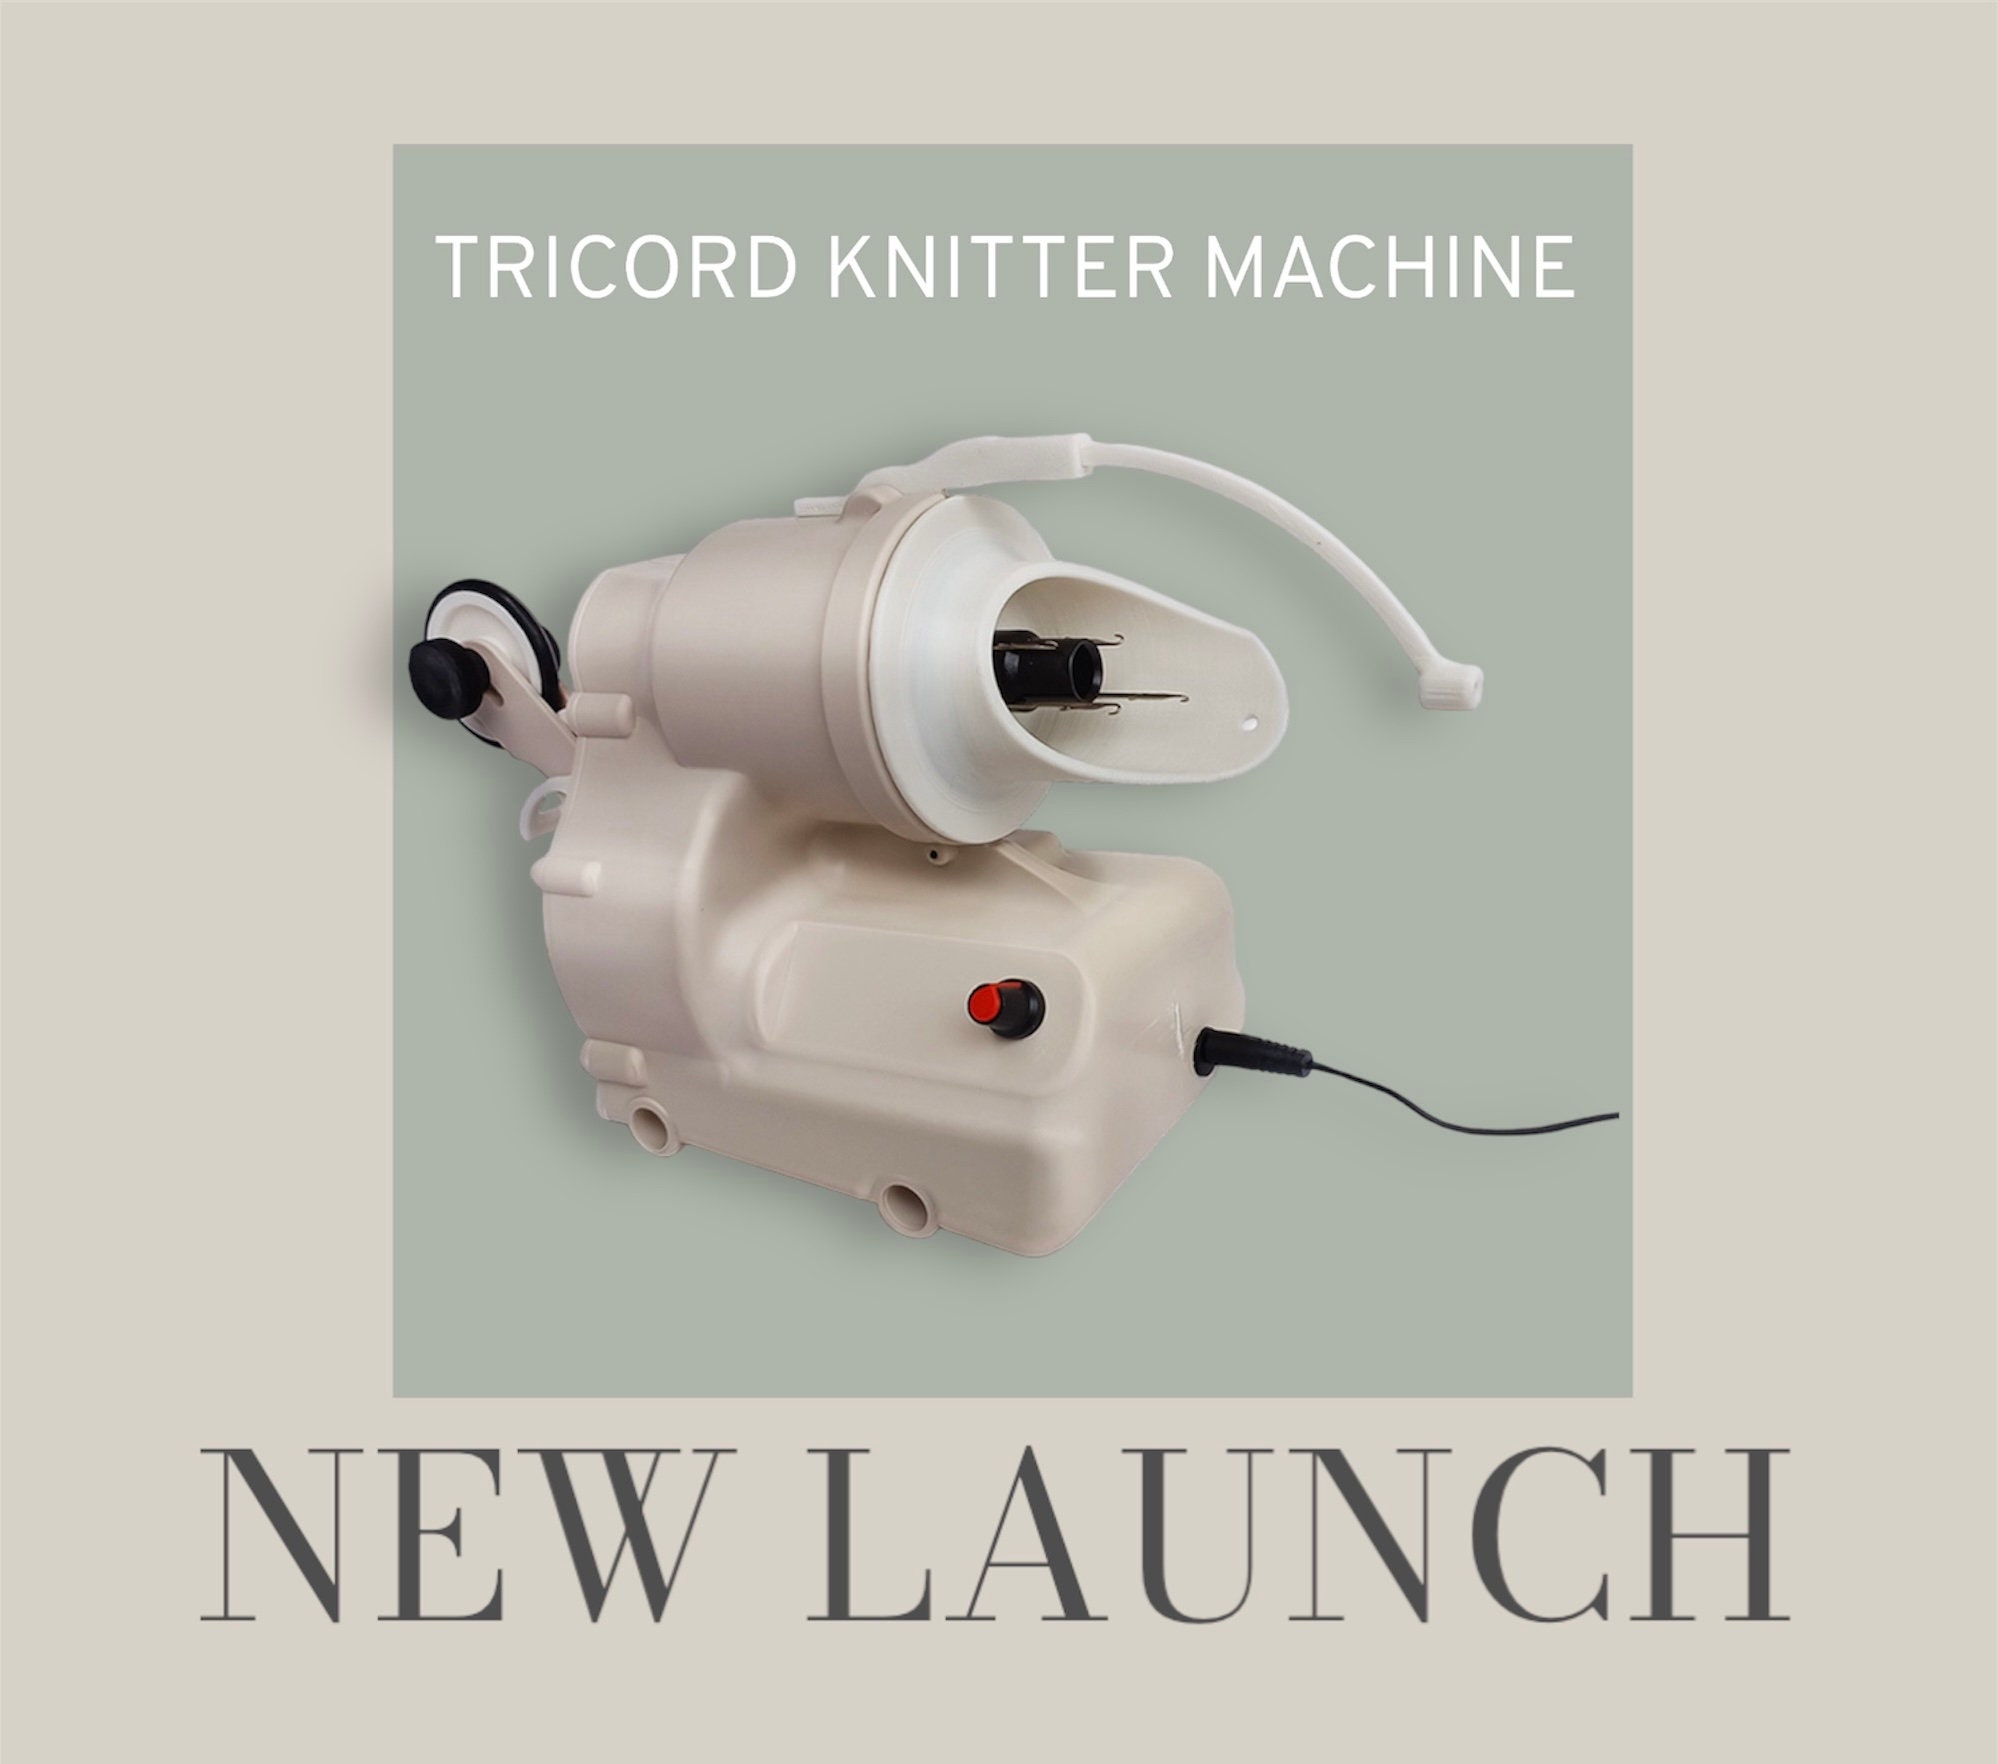 Tricotin I-Cord Knitter – Cabeza de Alfiler